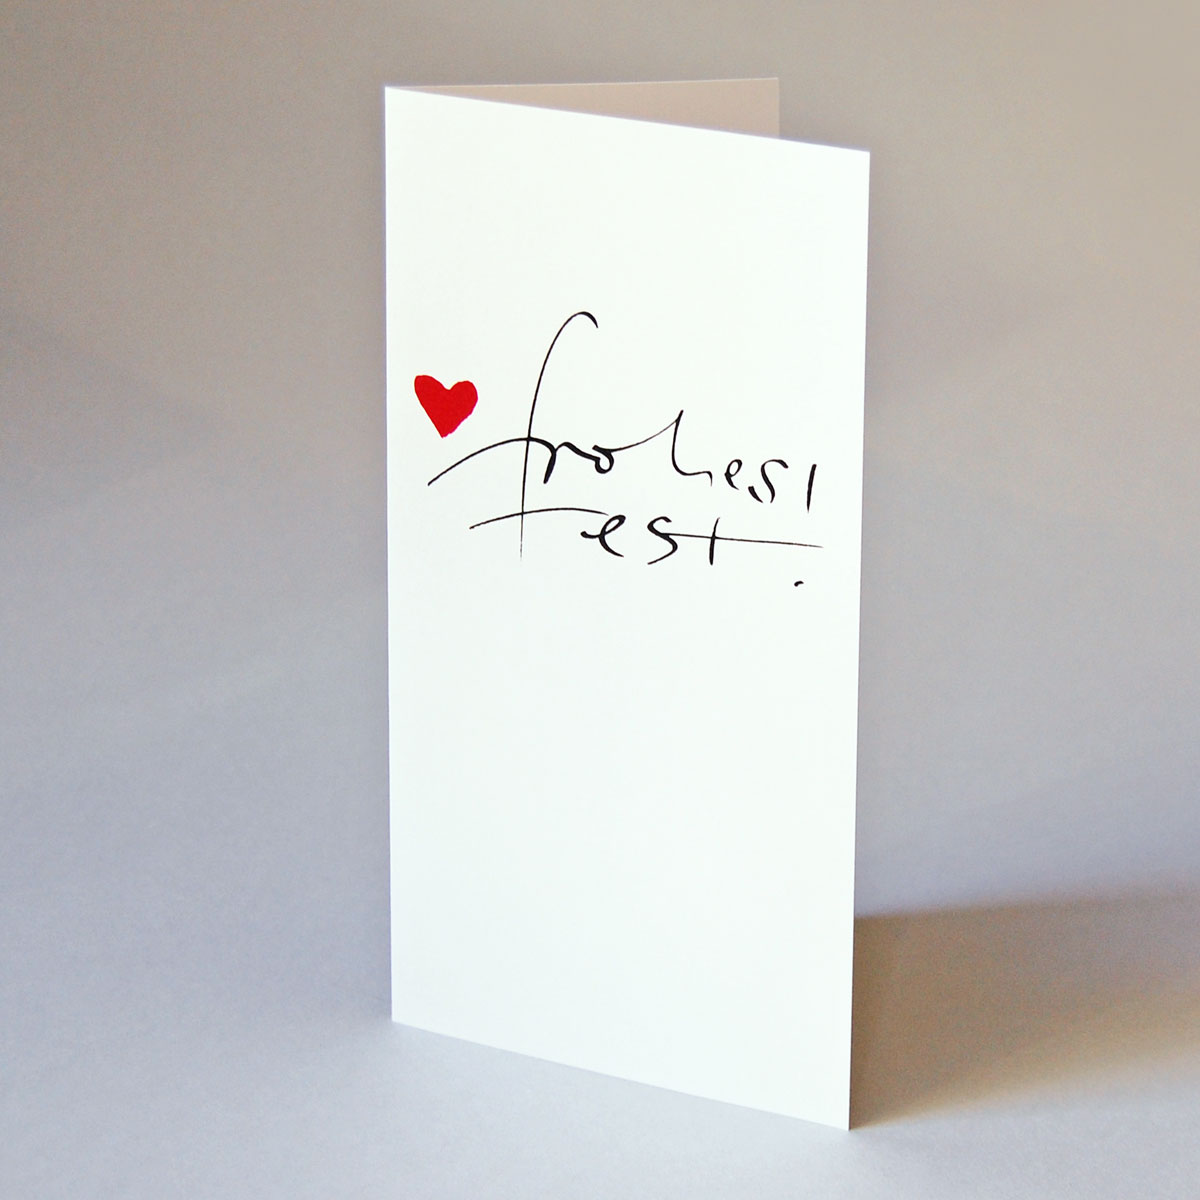 frohes fest! Kalligrafie-Weihnachtskarten mit rotem Herz